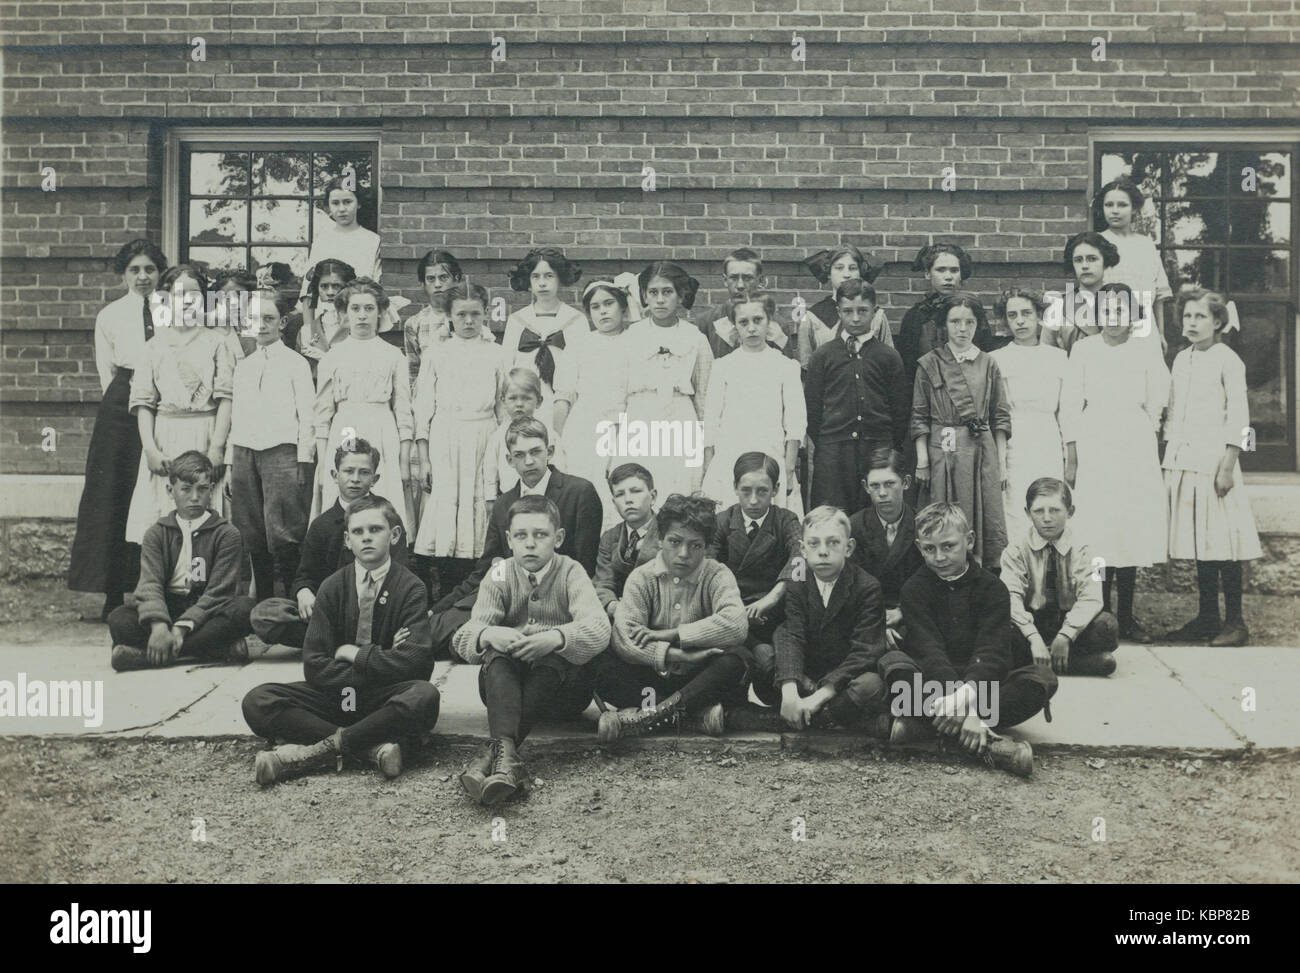 Amerikanisches Archiv monochrome Fotografie der Klasse von Schulkindern und  Lehrern, mit Schulgebäude, aufgenommen im frühen 20th. Jahrhundert in Port  Byron, NY, USA Stockfotografie - Alamy